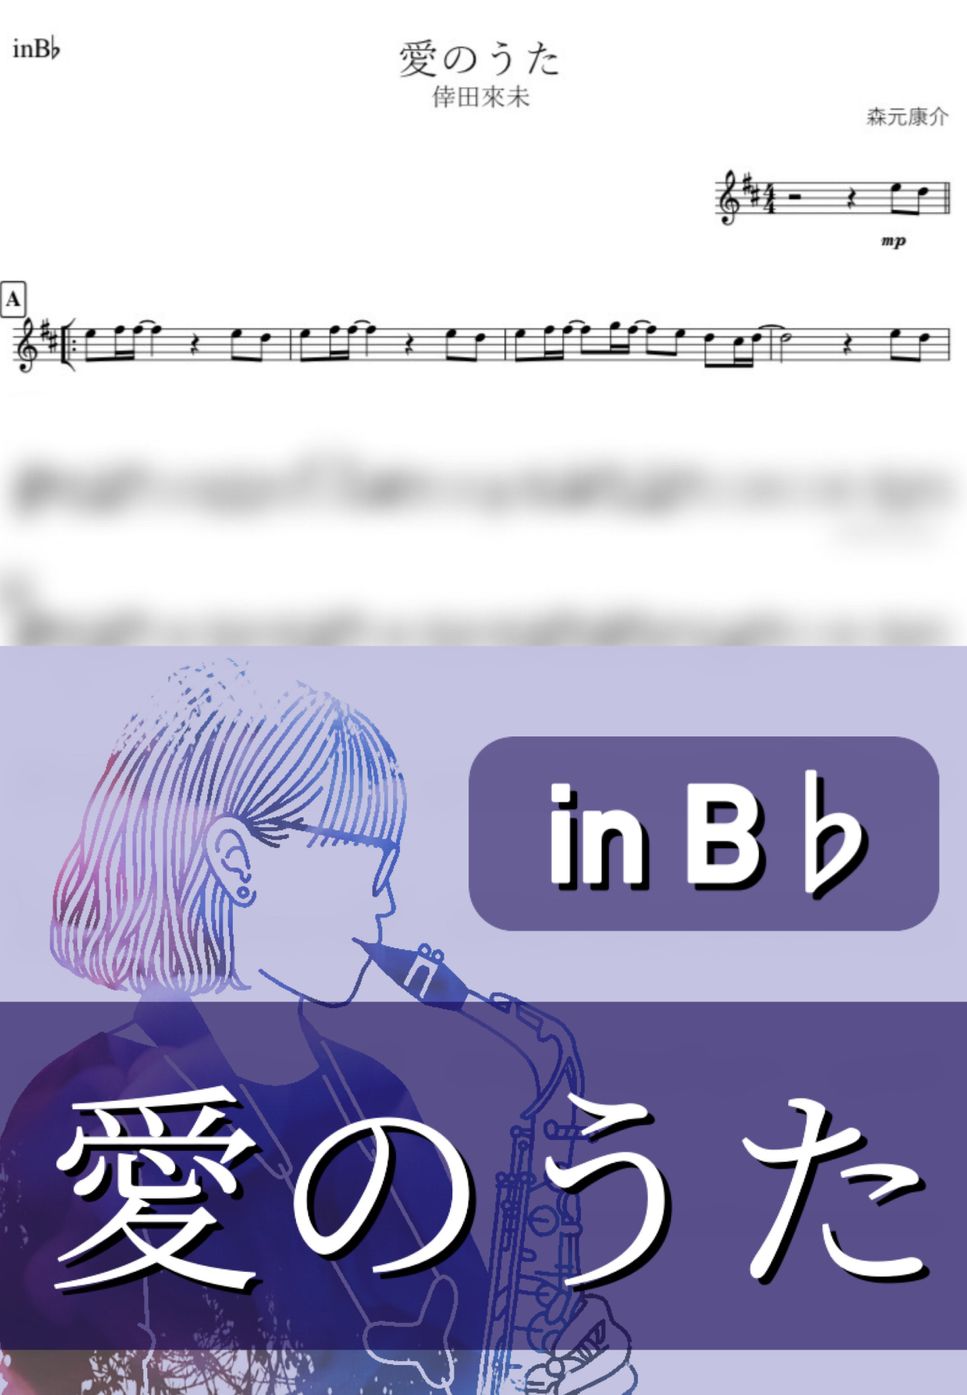 倖田 來未 - 愛のうた (B♭) by kanamusic